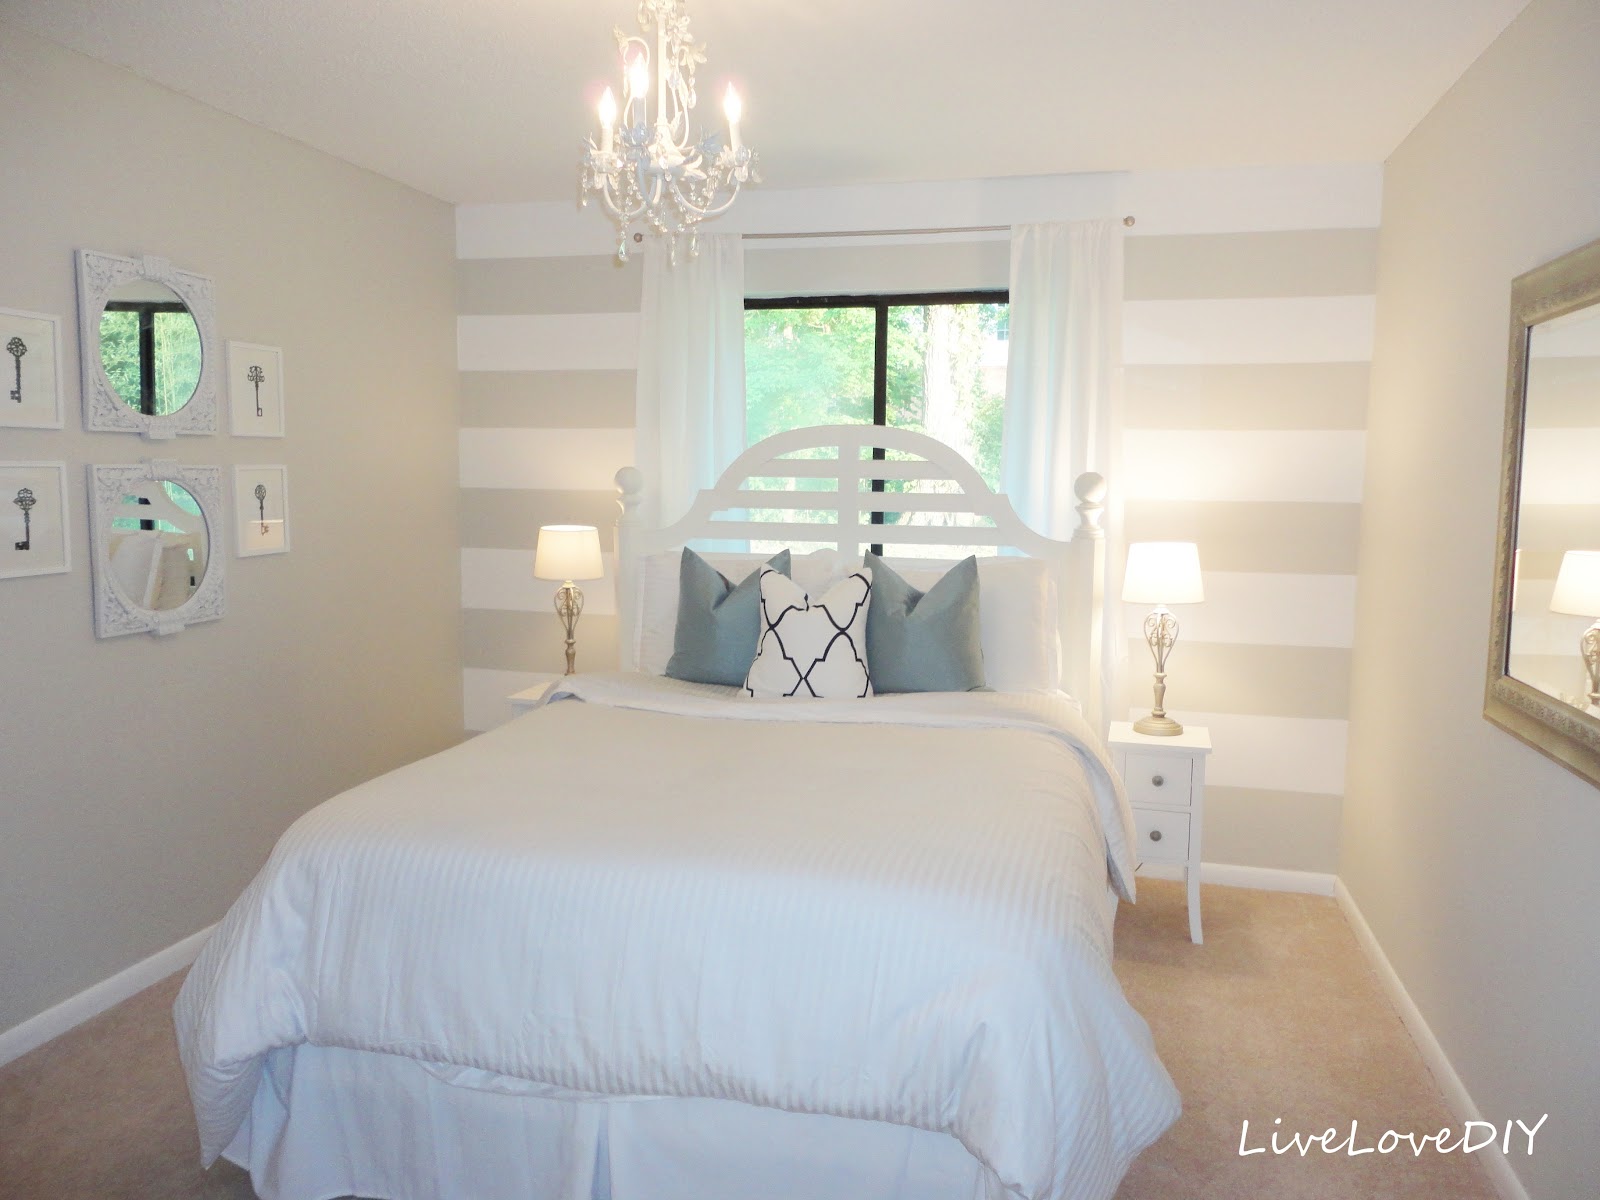 LiveLoveDIY: DIY Striped Wall Guest Bedroom Makeover